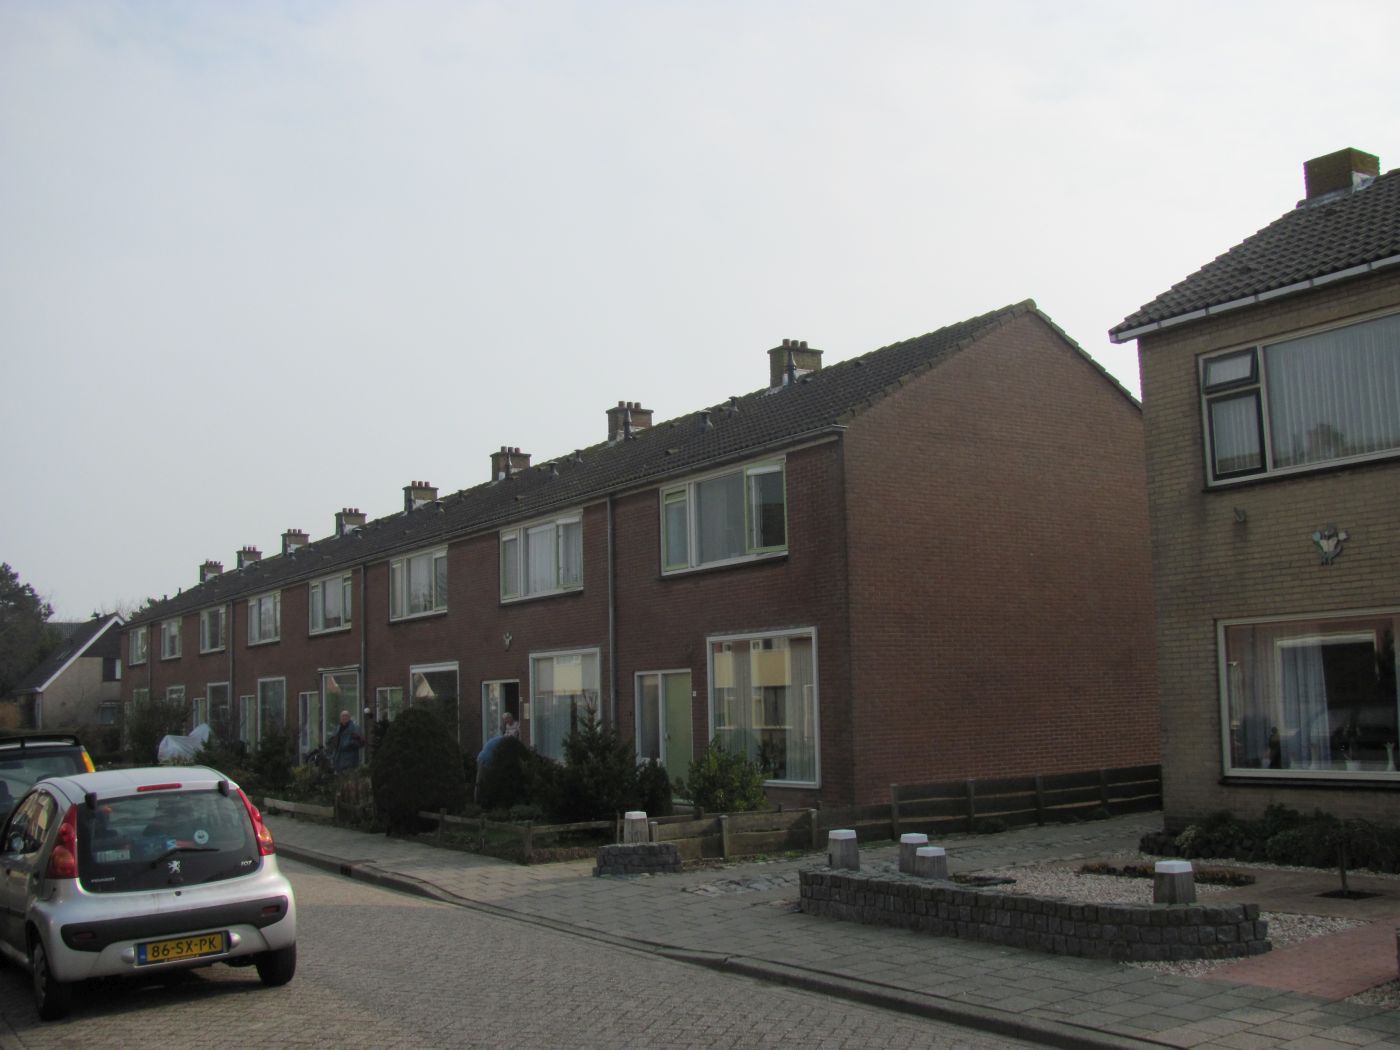 Tulpstraat 22, 4486 BZ Colijnsplaat, Nederland